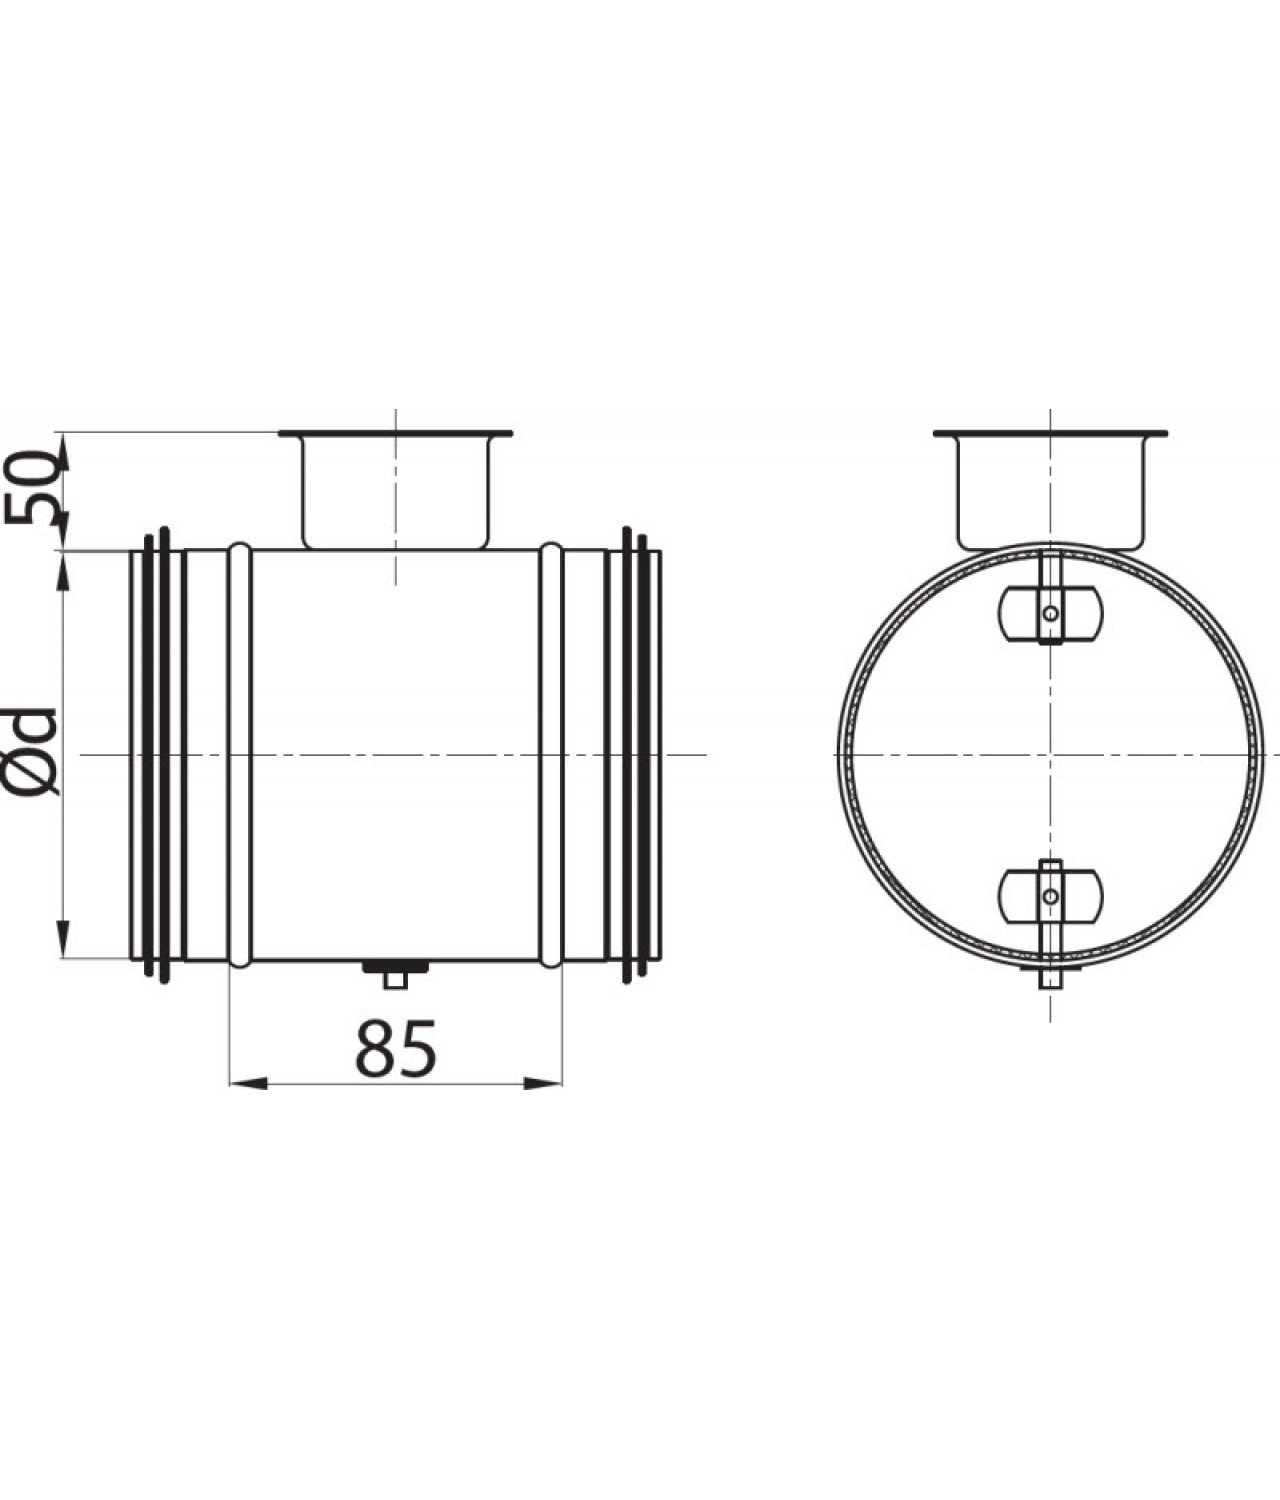 Воздушные клапаны для воздуховодов RSKH - чертеж